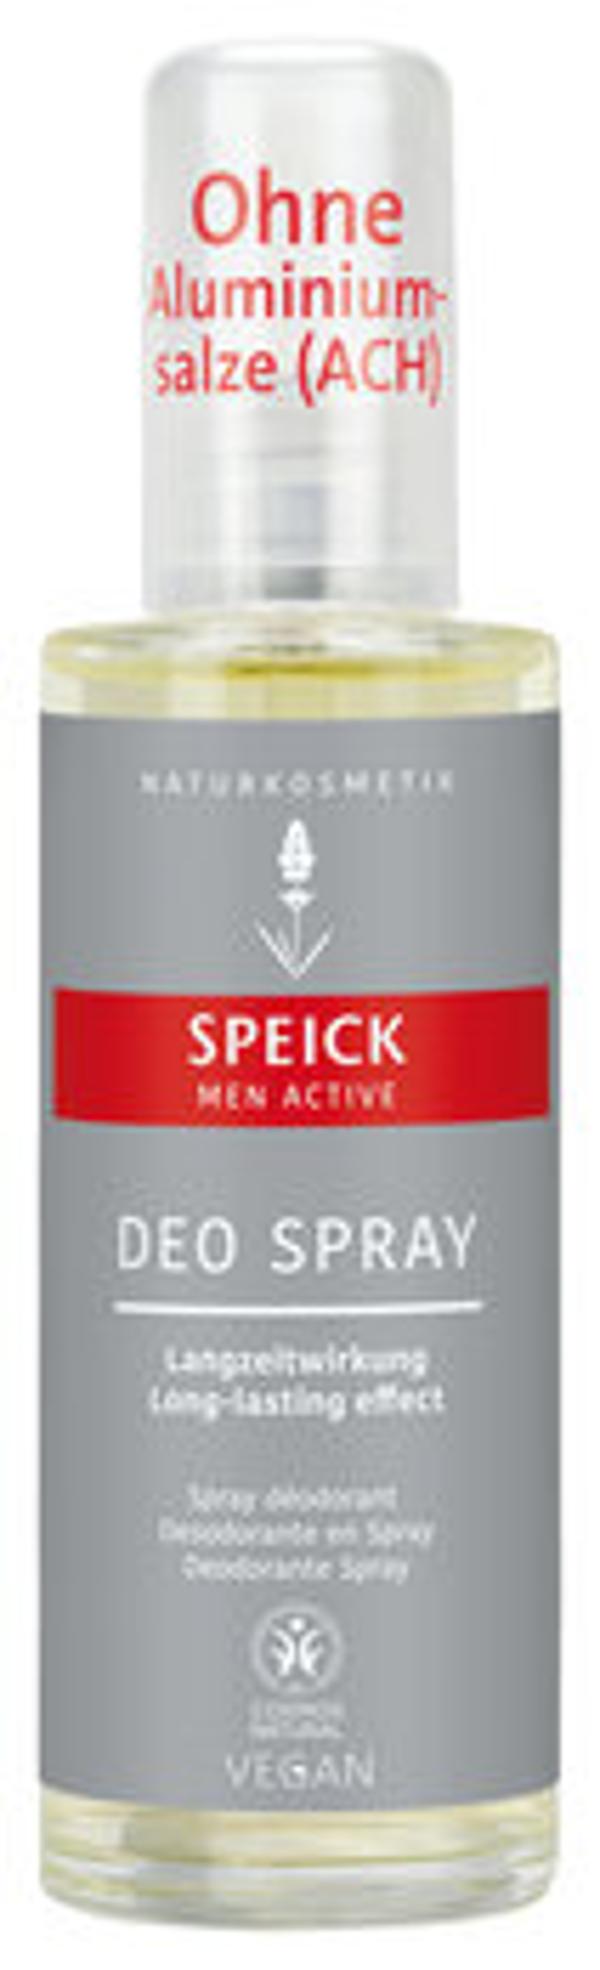 Produktfoto zu Speick Men Active Deo Spray 75ml